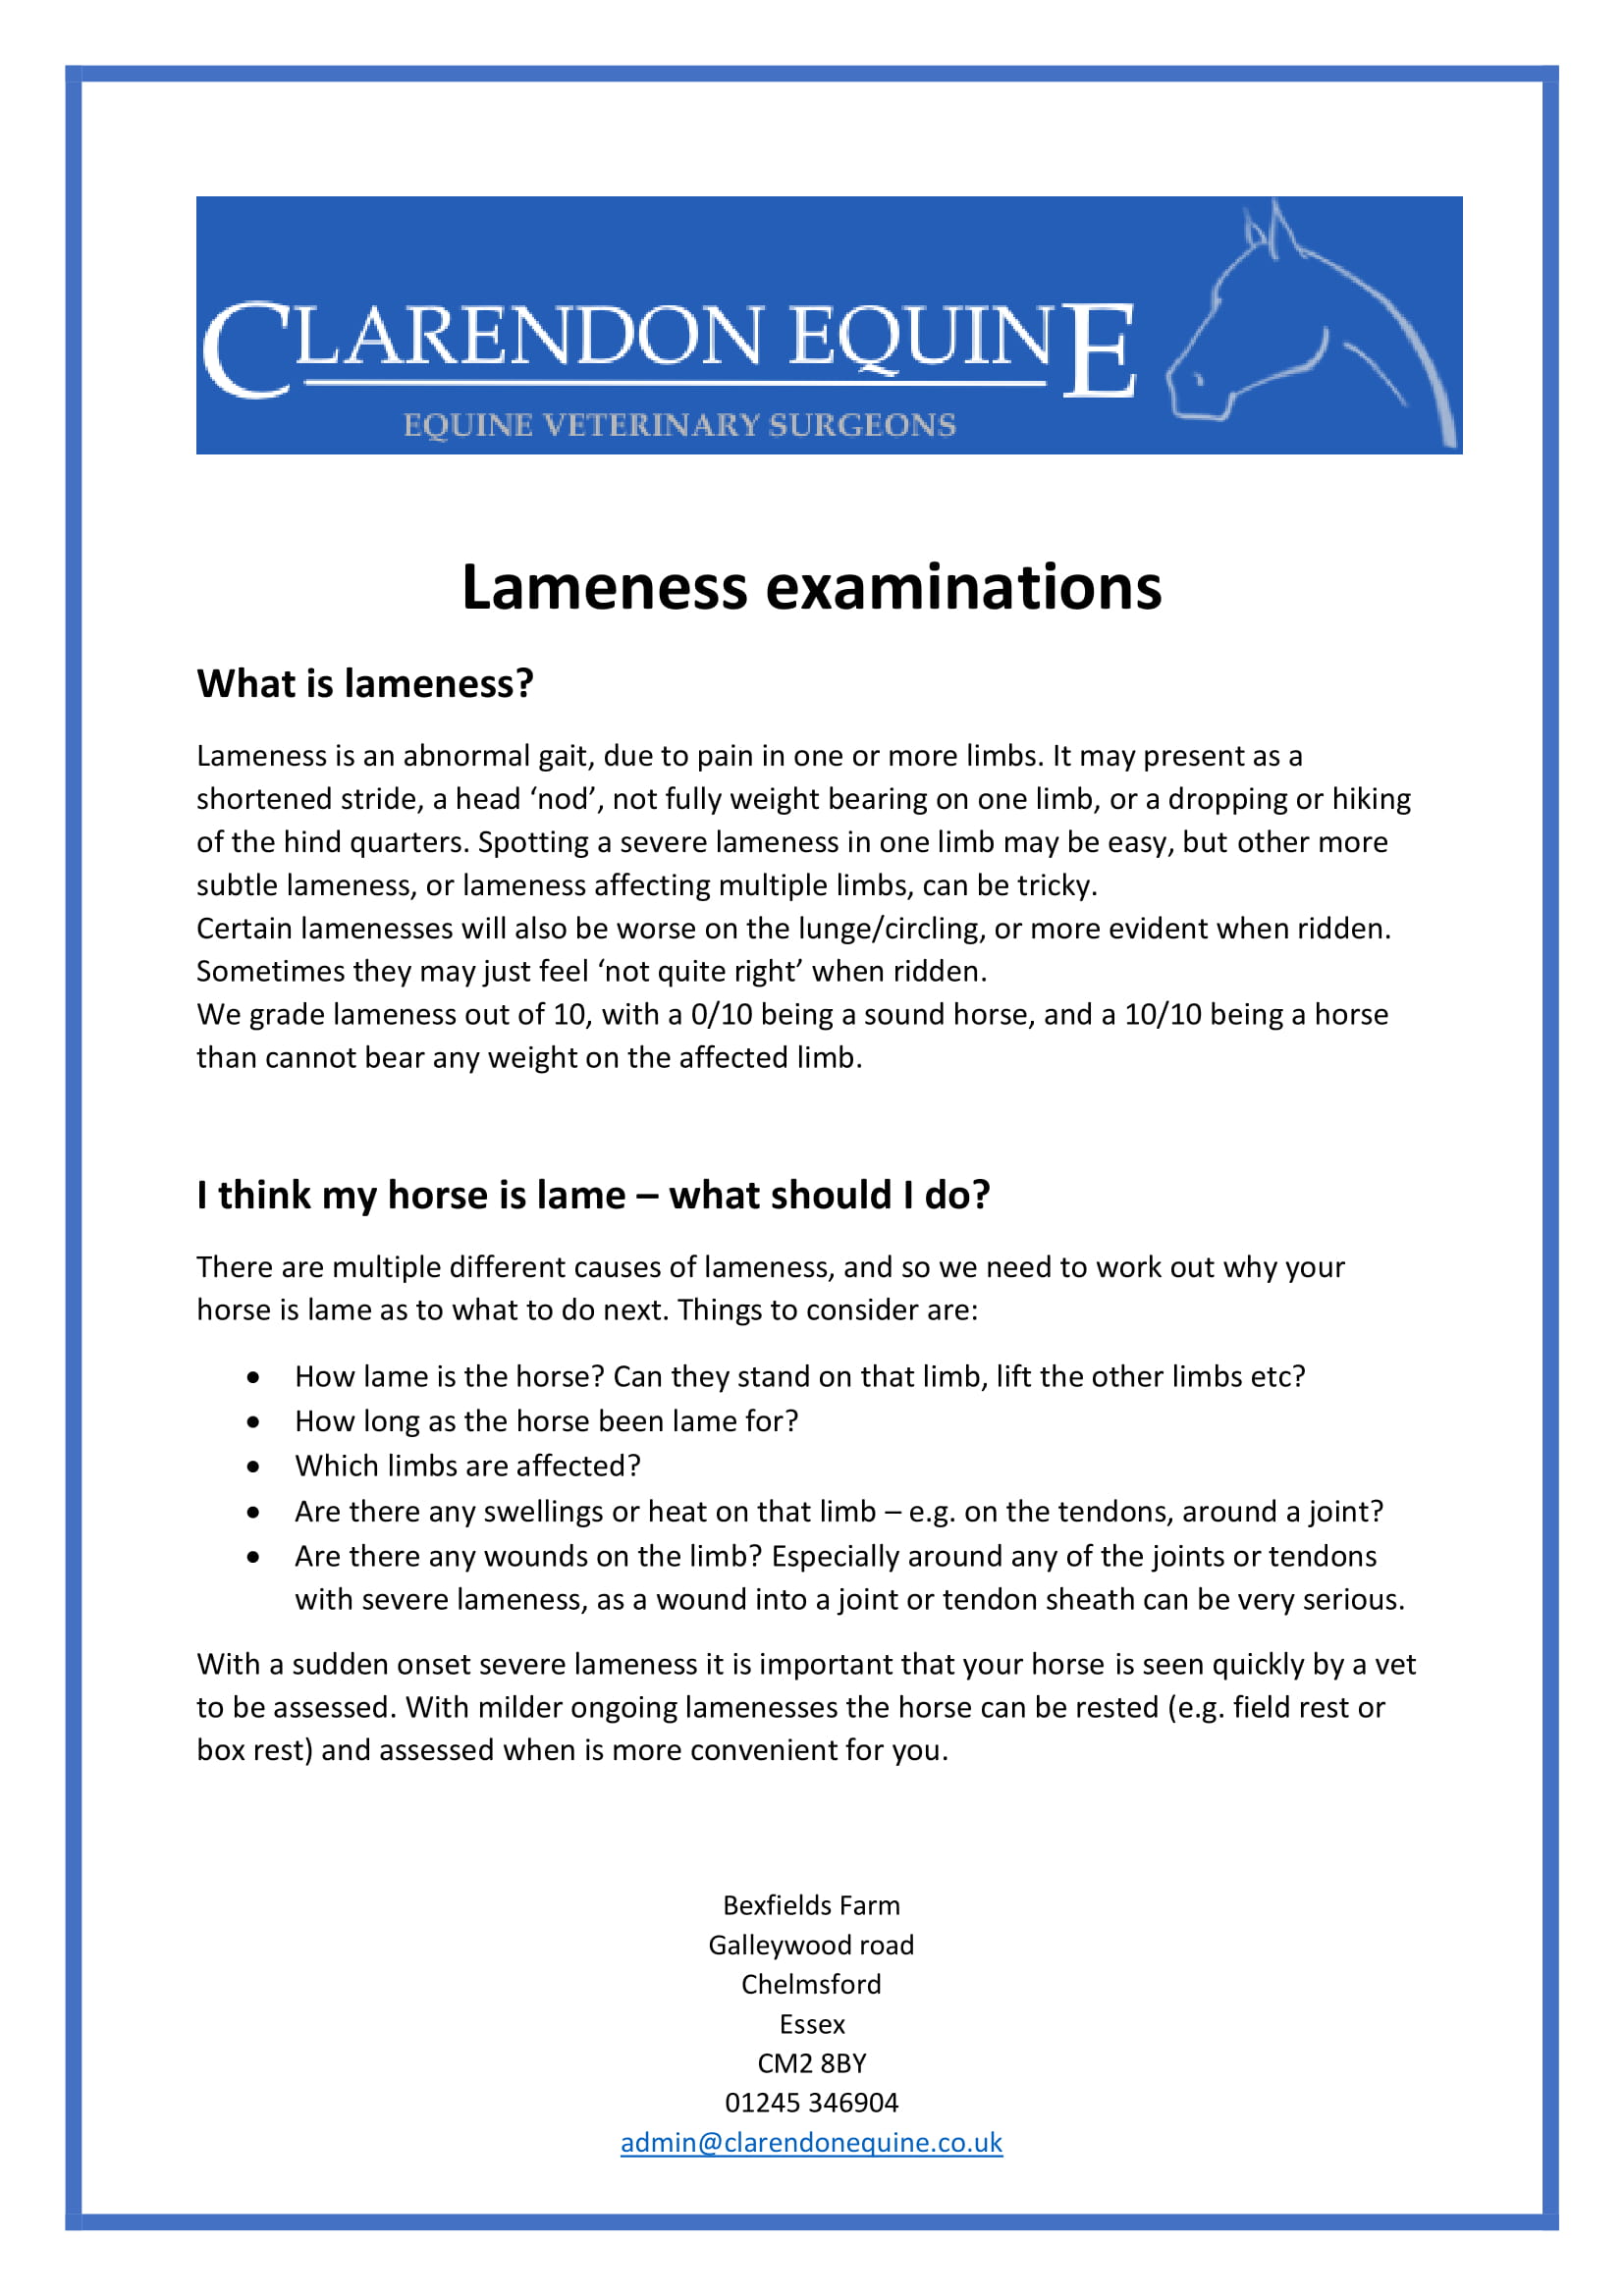 Lameness examinations